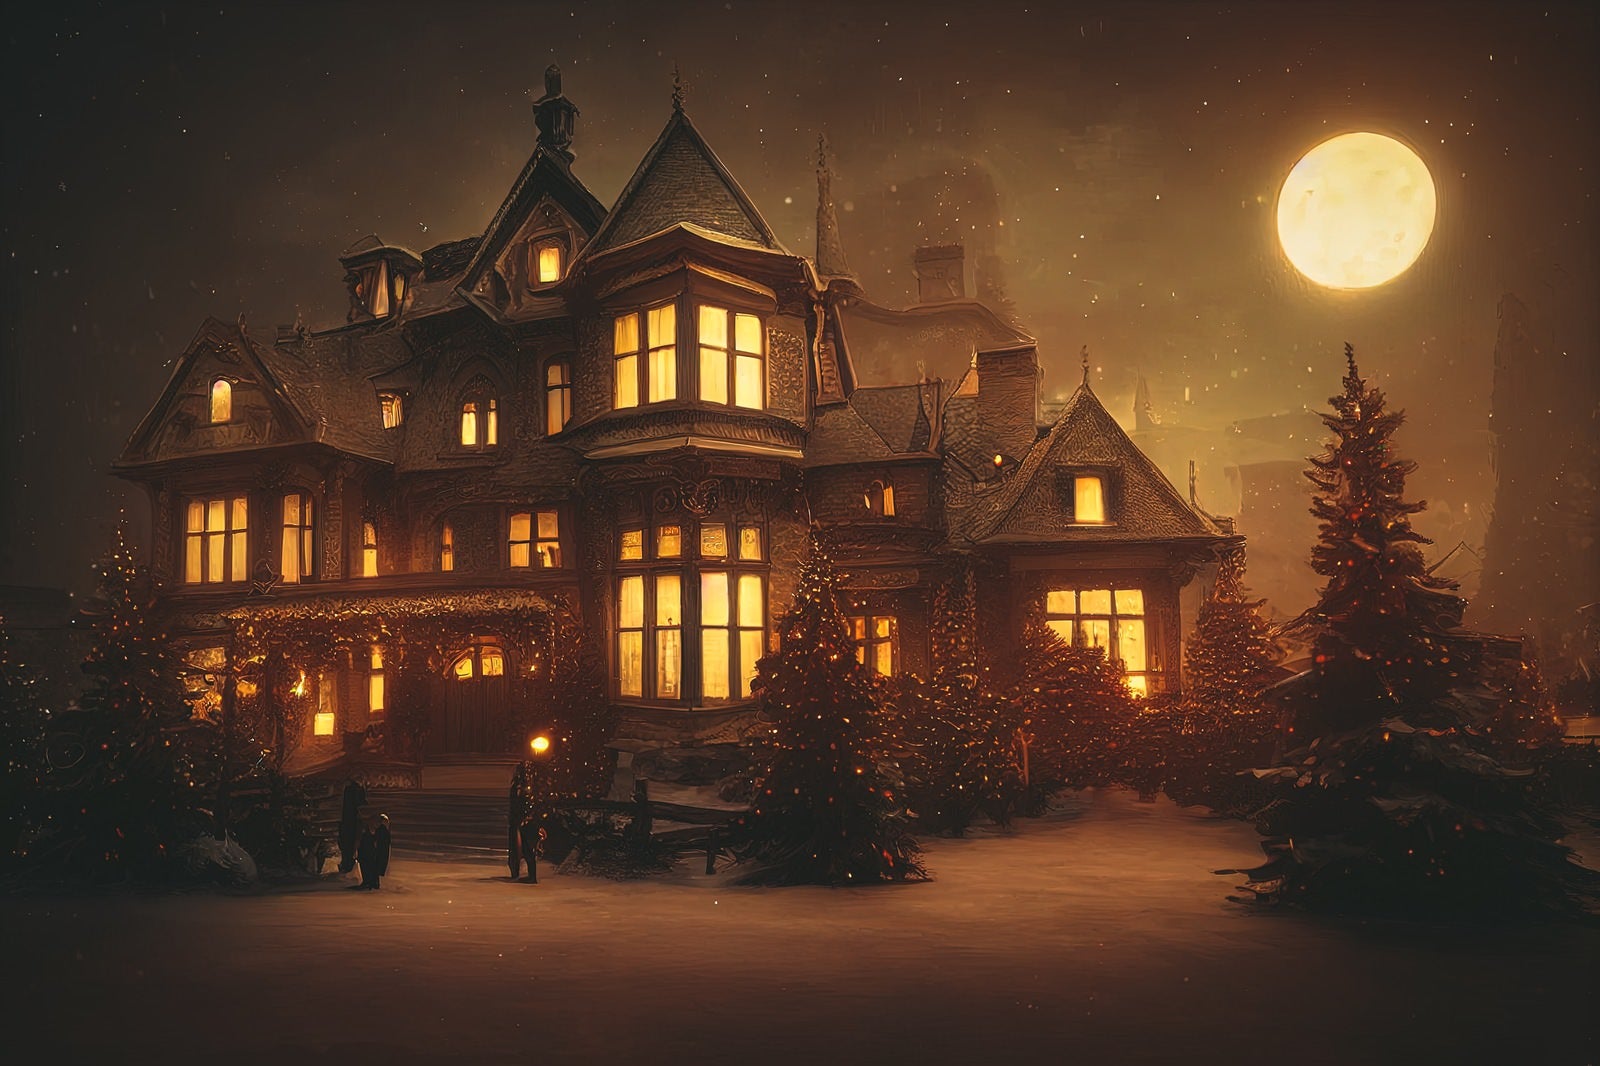 「月に照らされたクリスマスツリーと洋館」の写真